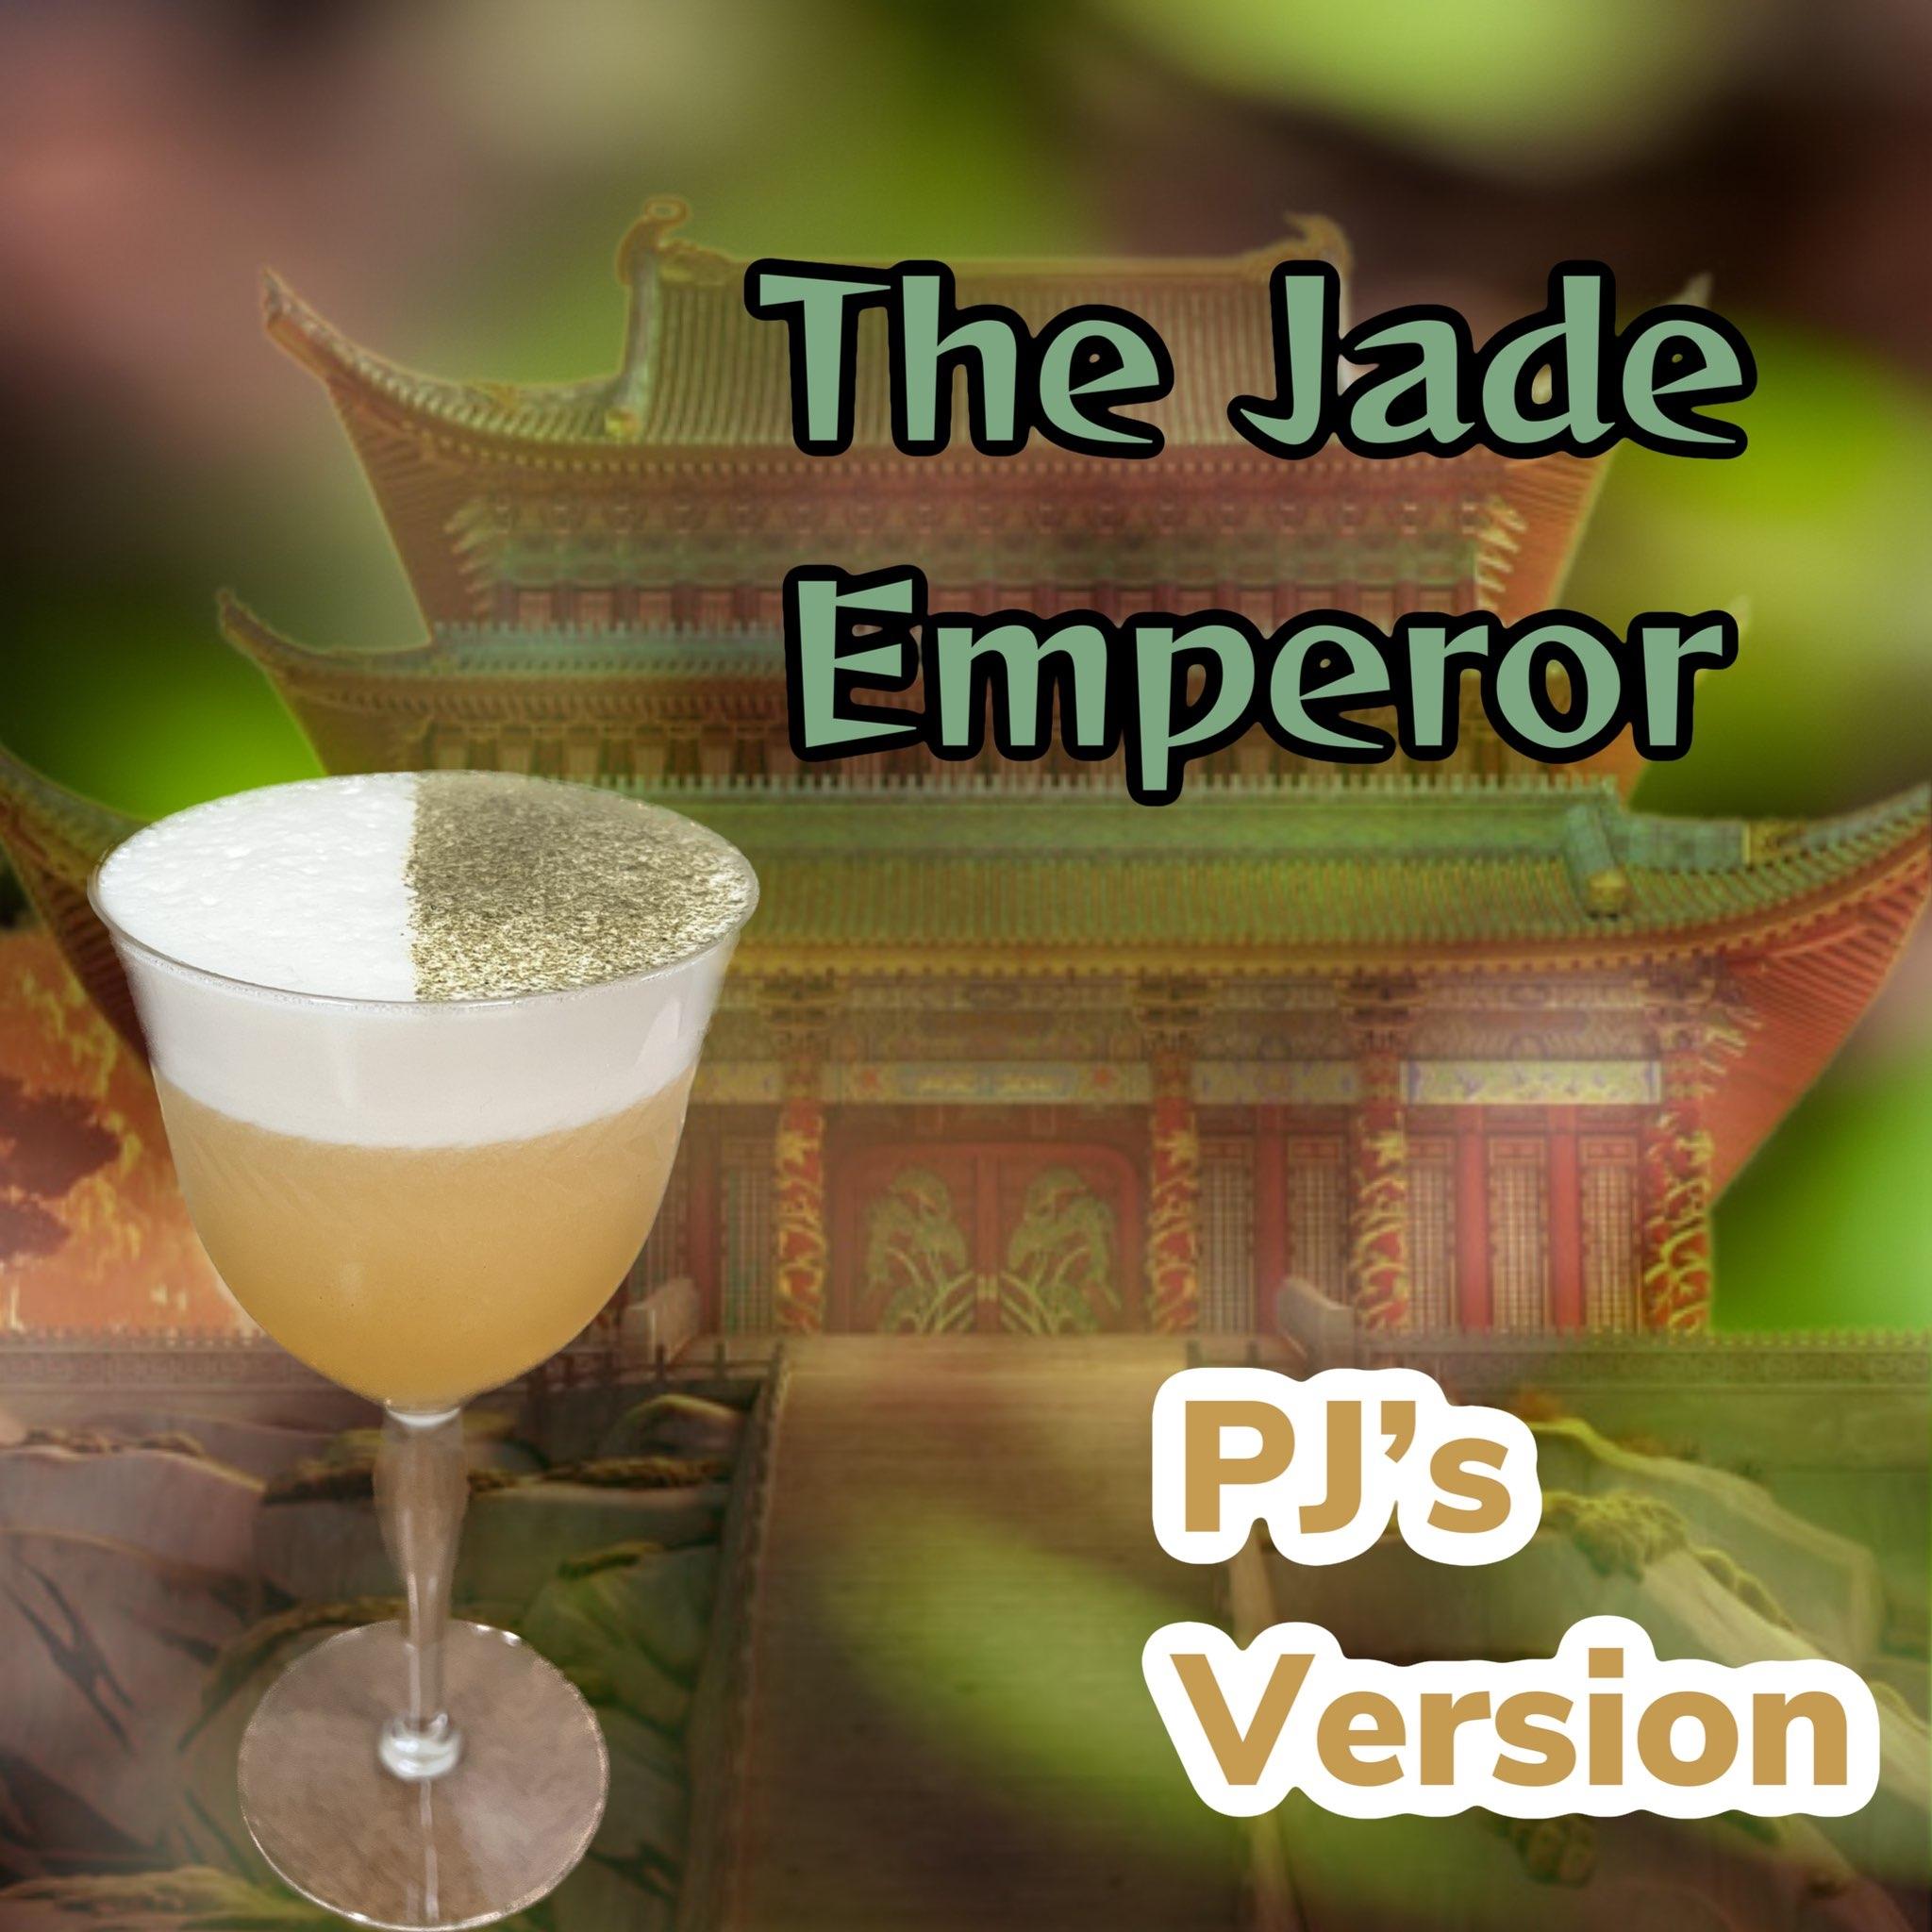 The Jade Emperor (PJ's recipe)